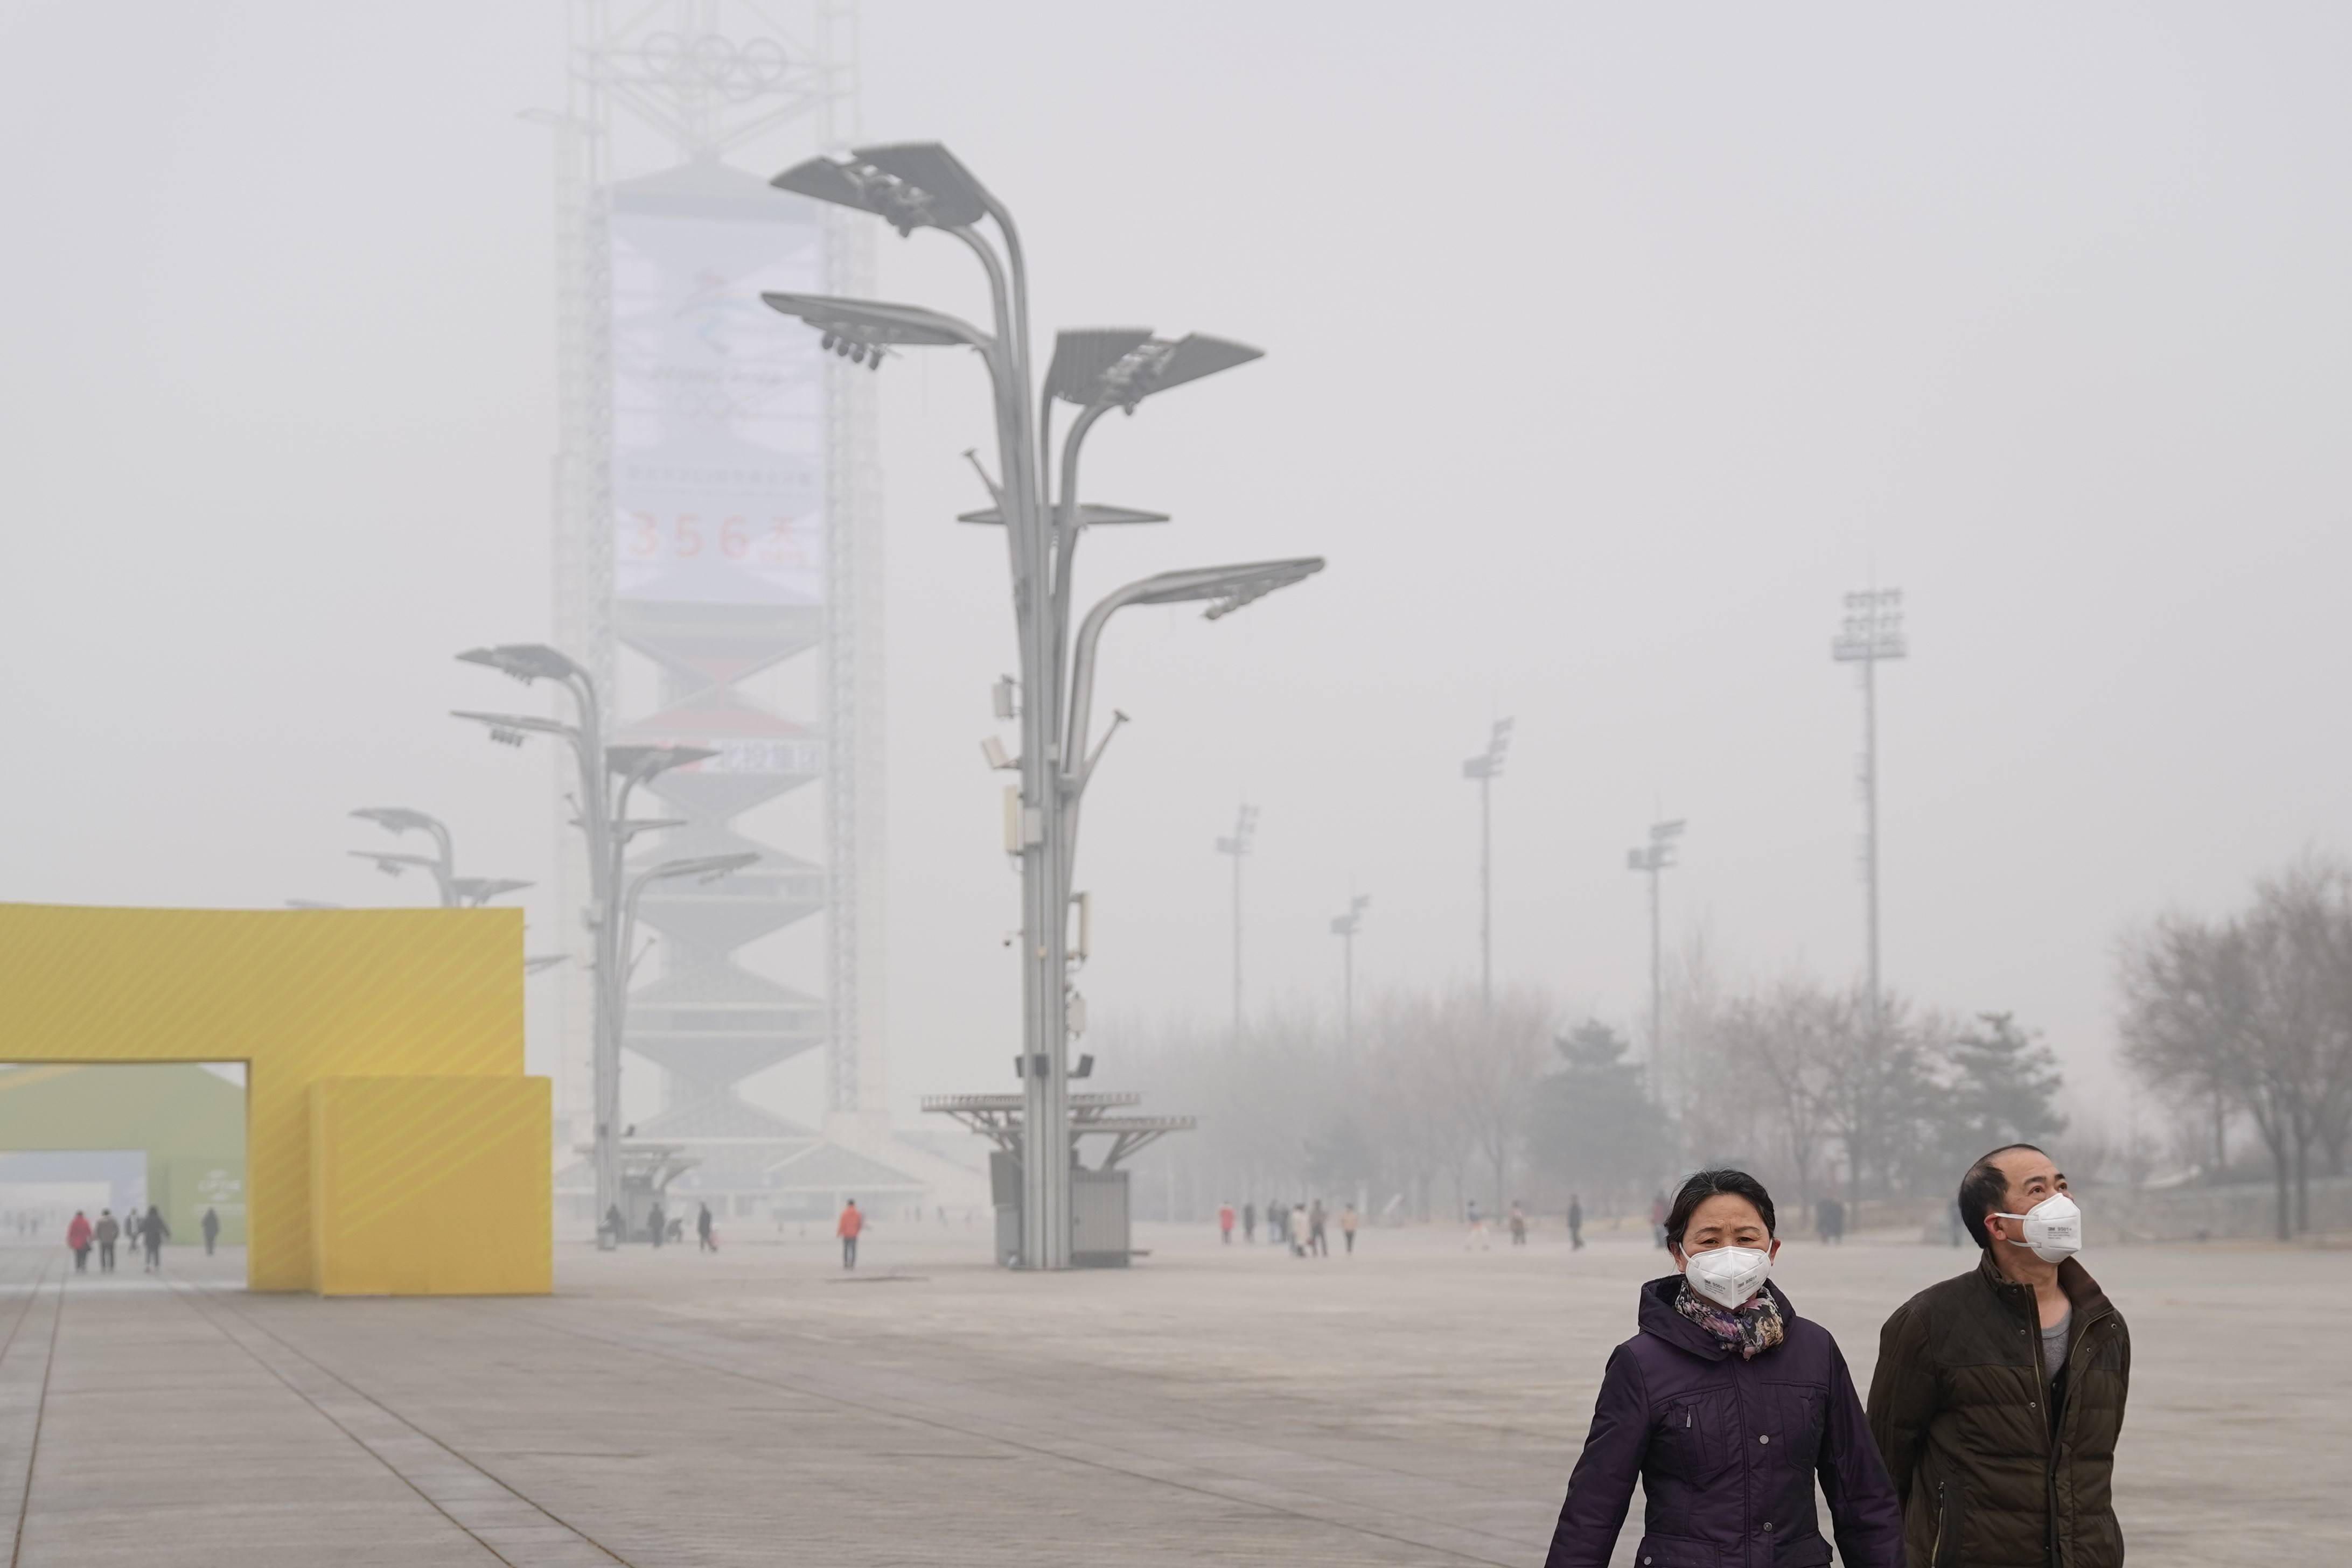 北京出现雾霾天气